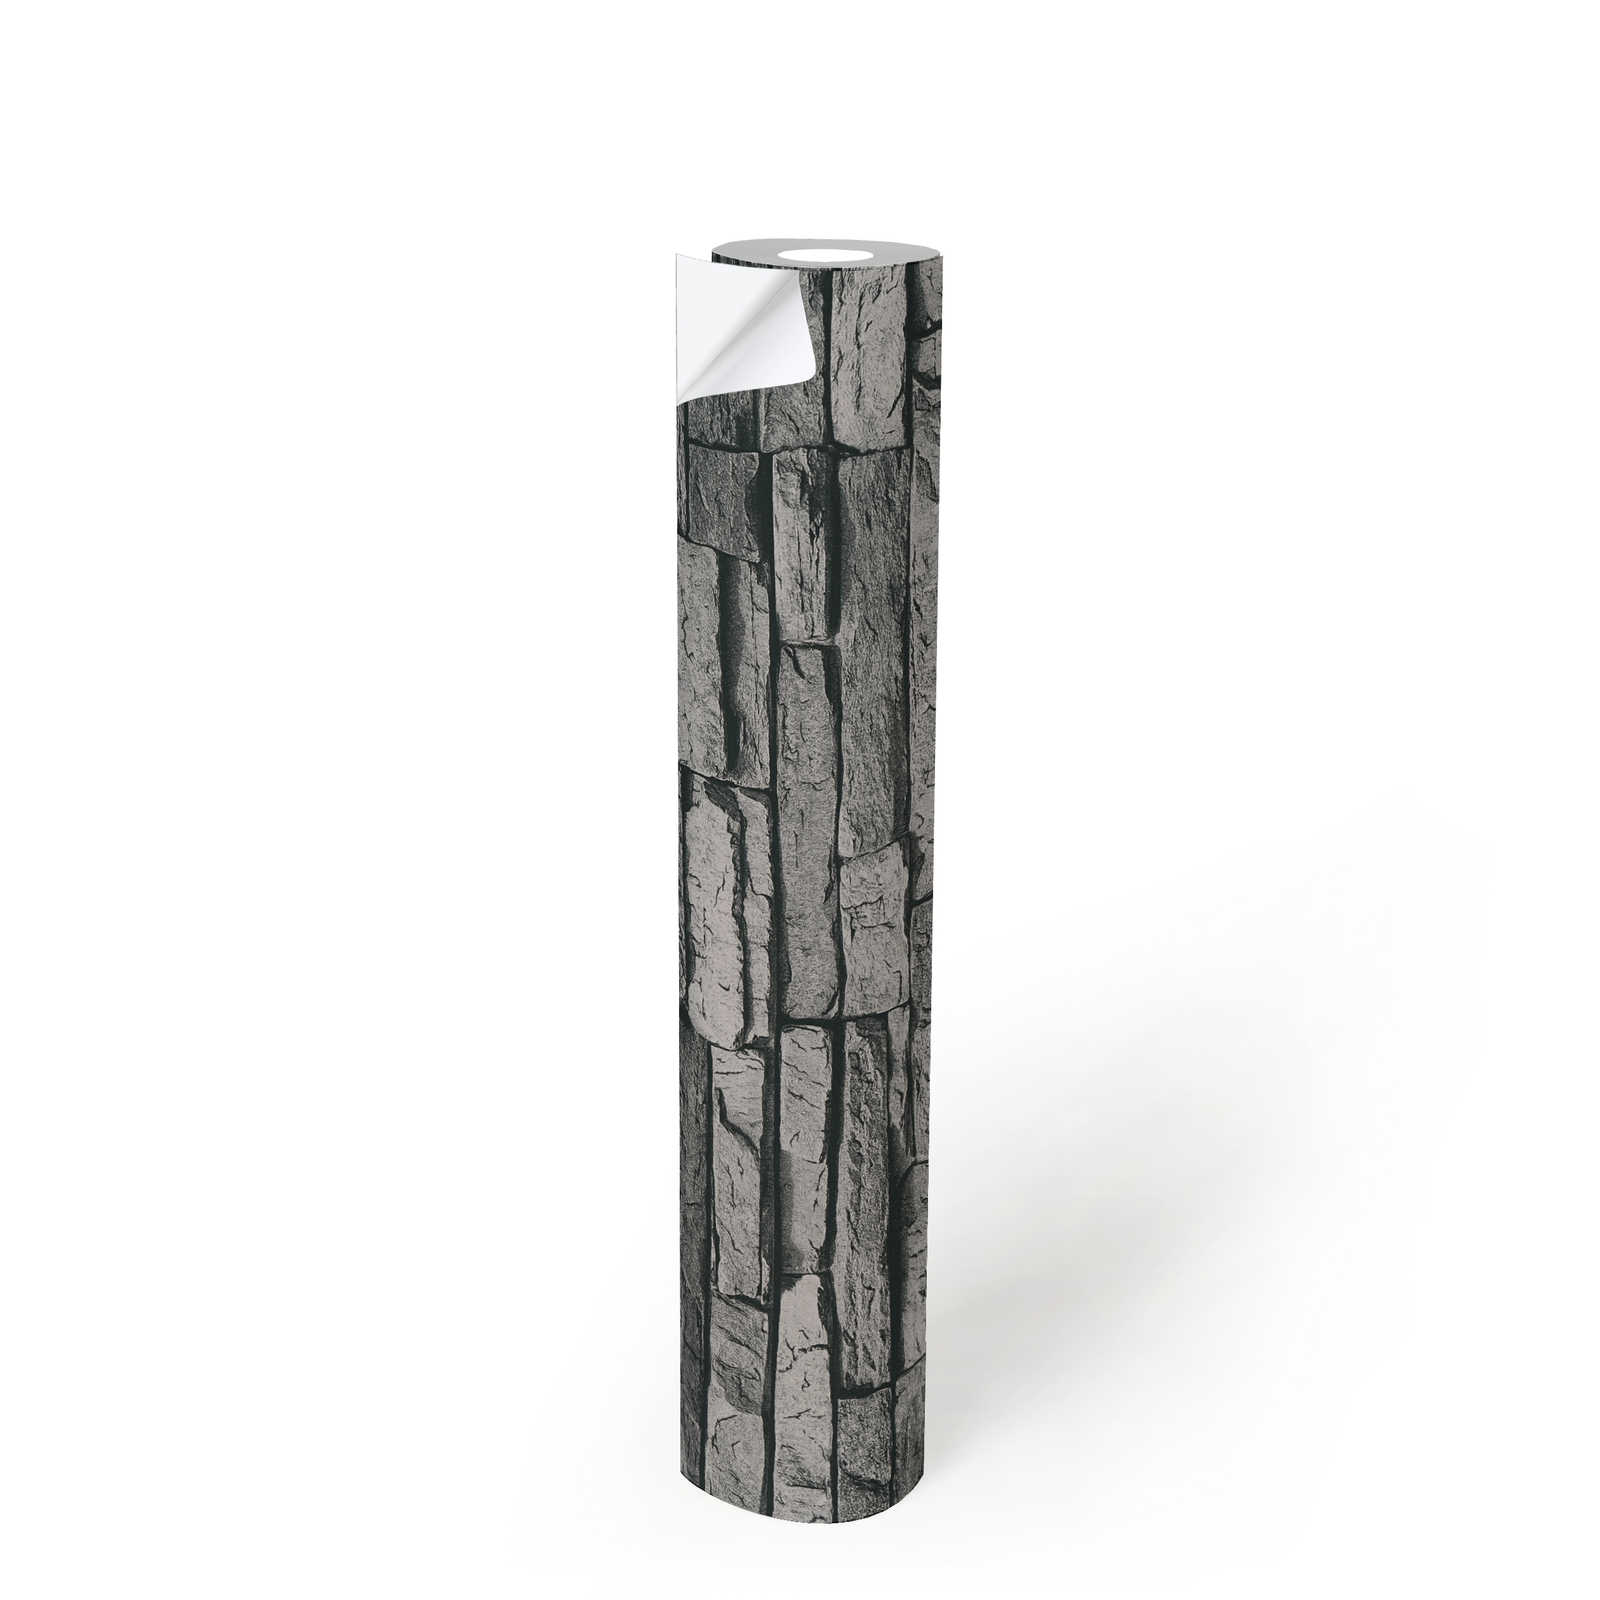             Zelfklevend behangpapier | natuursteenlook met 3D-effect - grijs, zwart
        